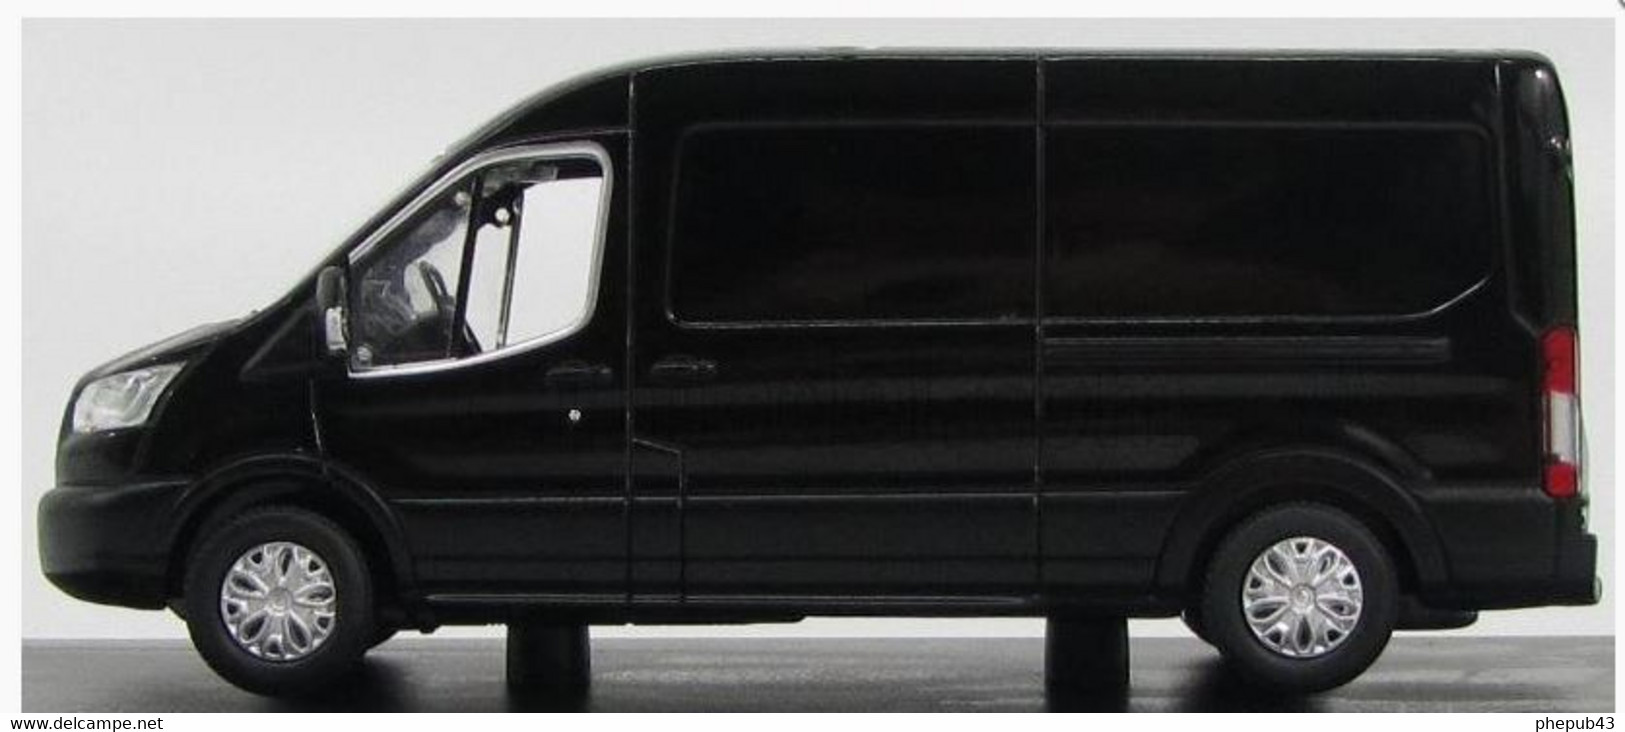 Ford Transit Van - 2015 - Black - Greenlight - Vrachtwagens